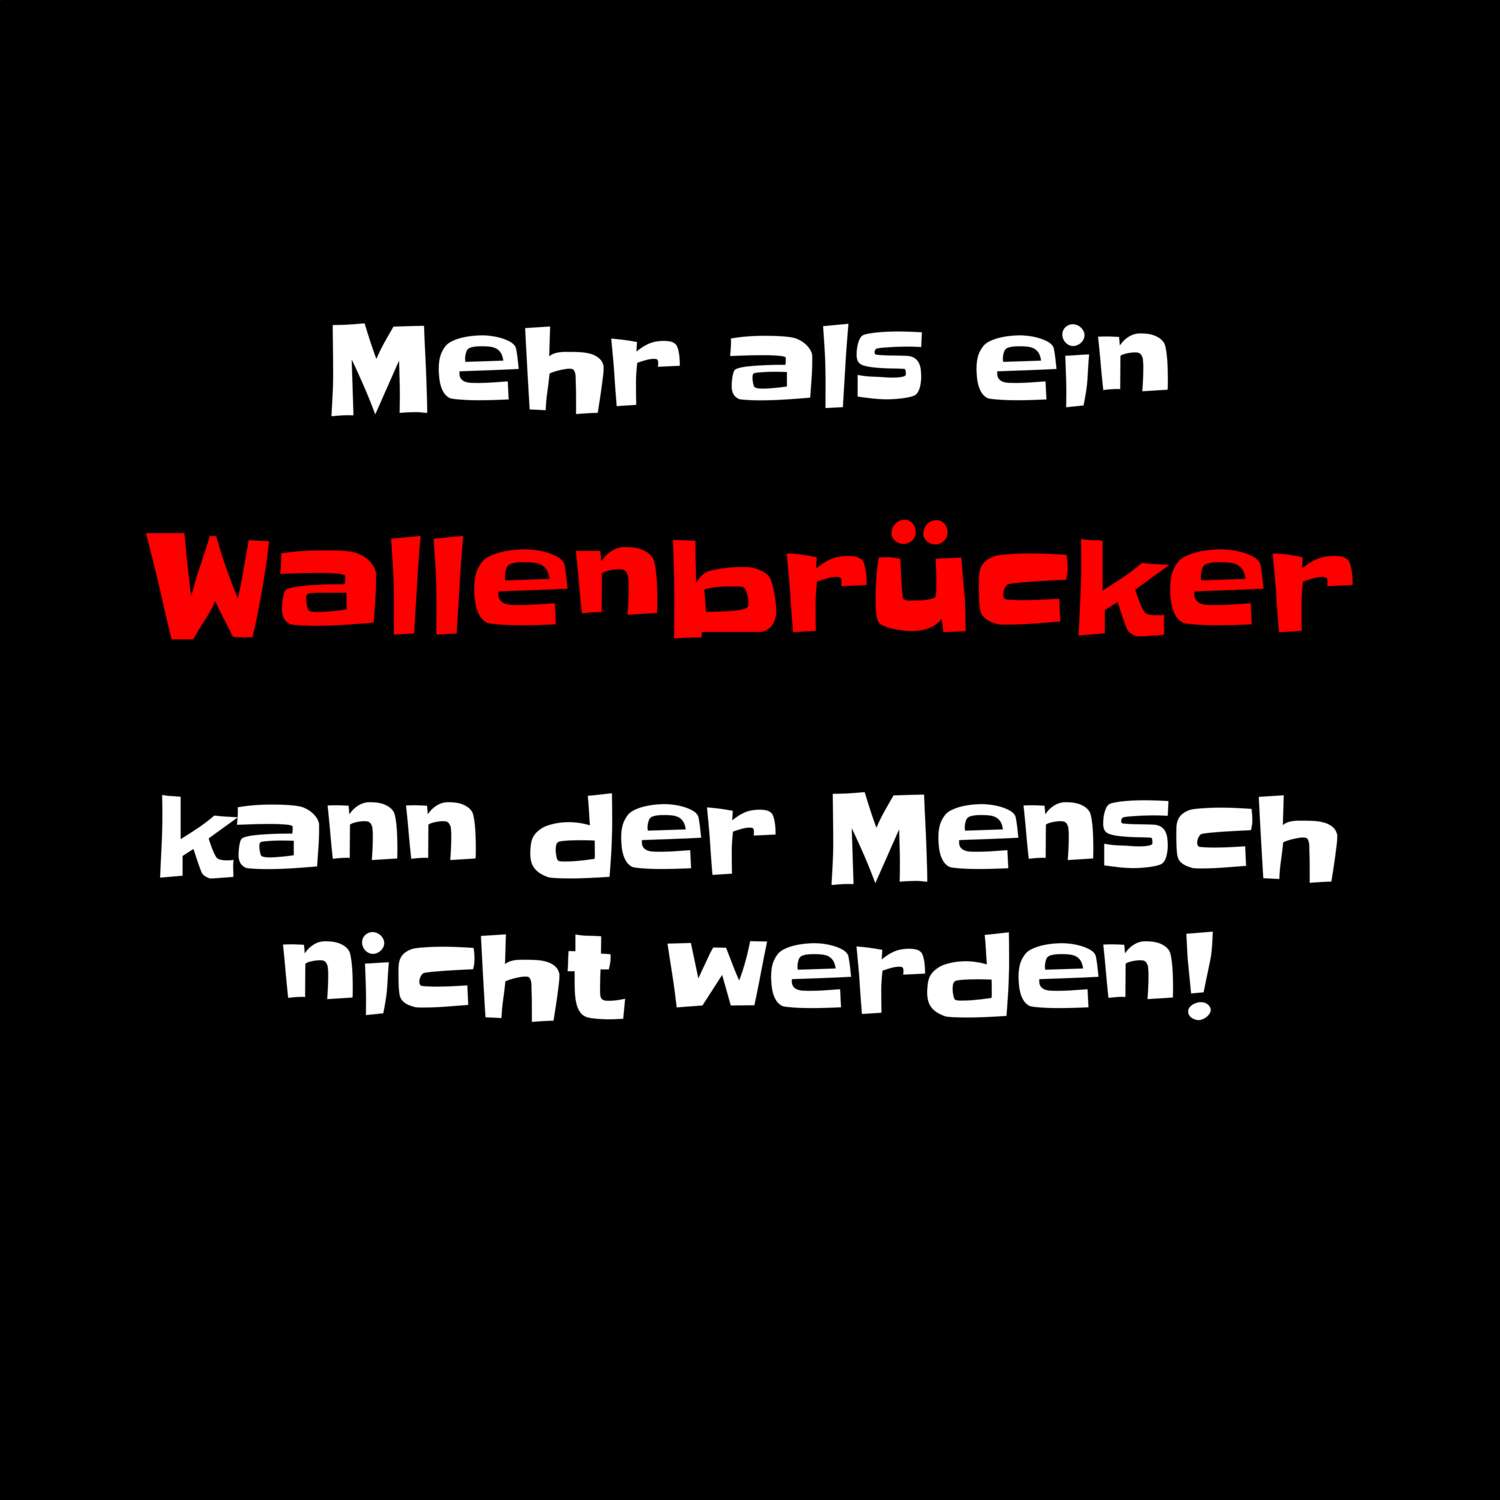 Wallenbrück T-Shirt »Mehr als ein«